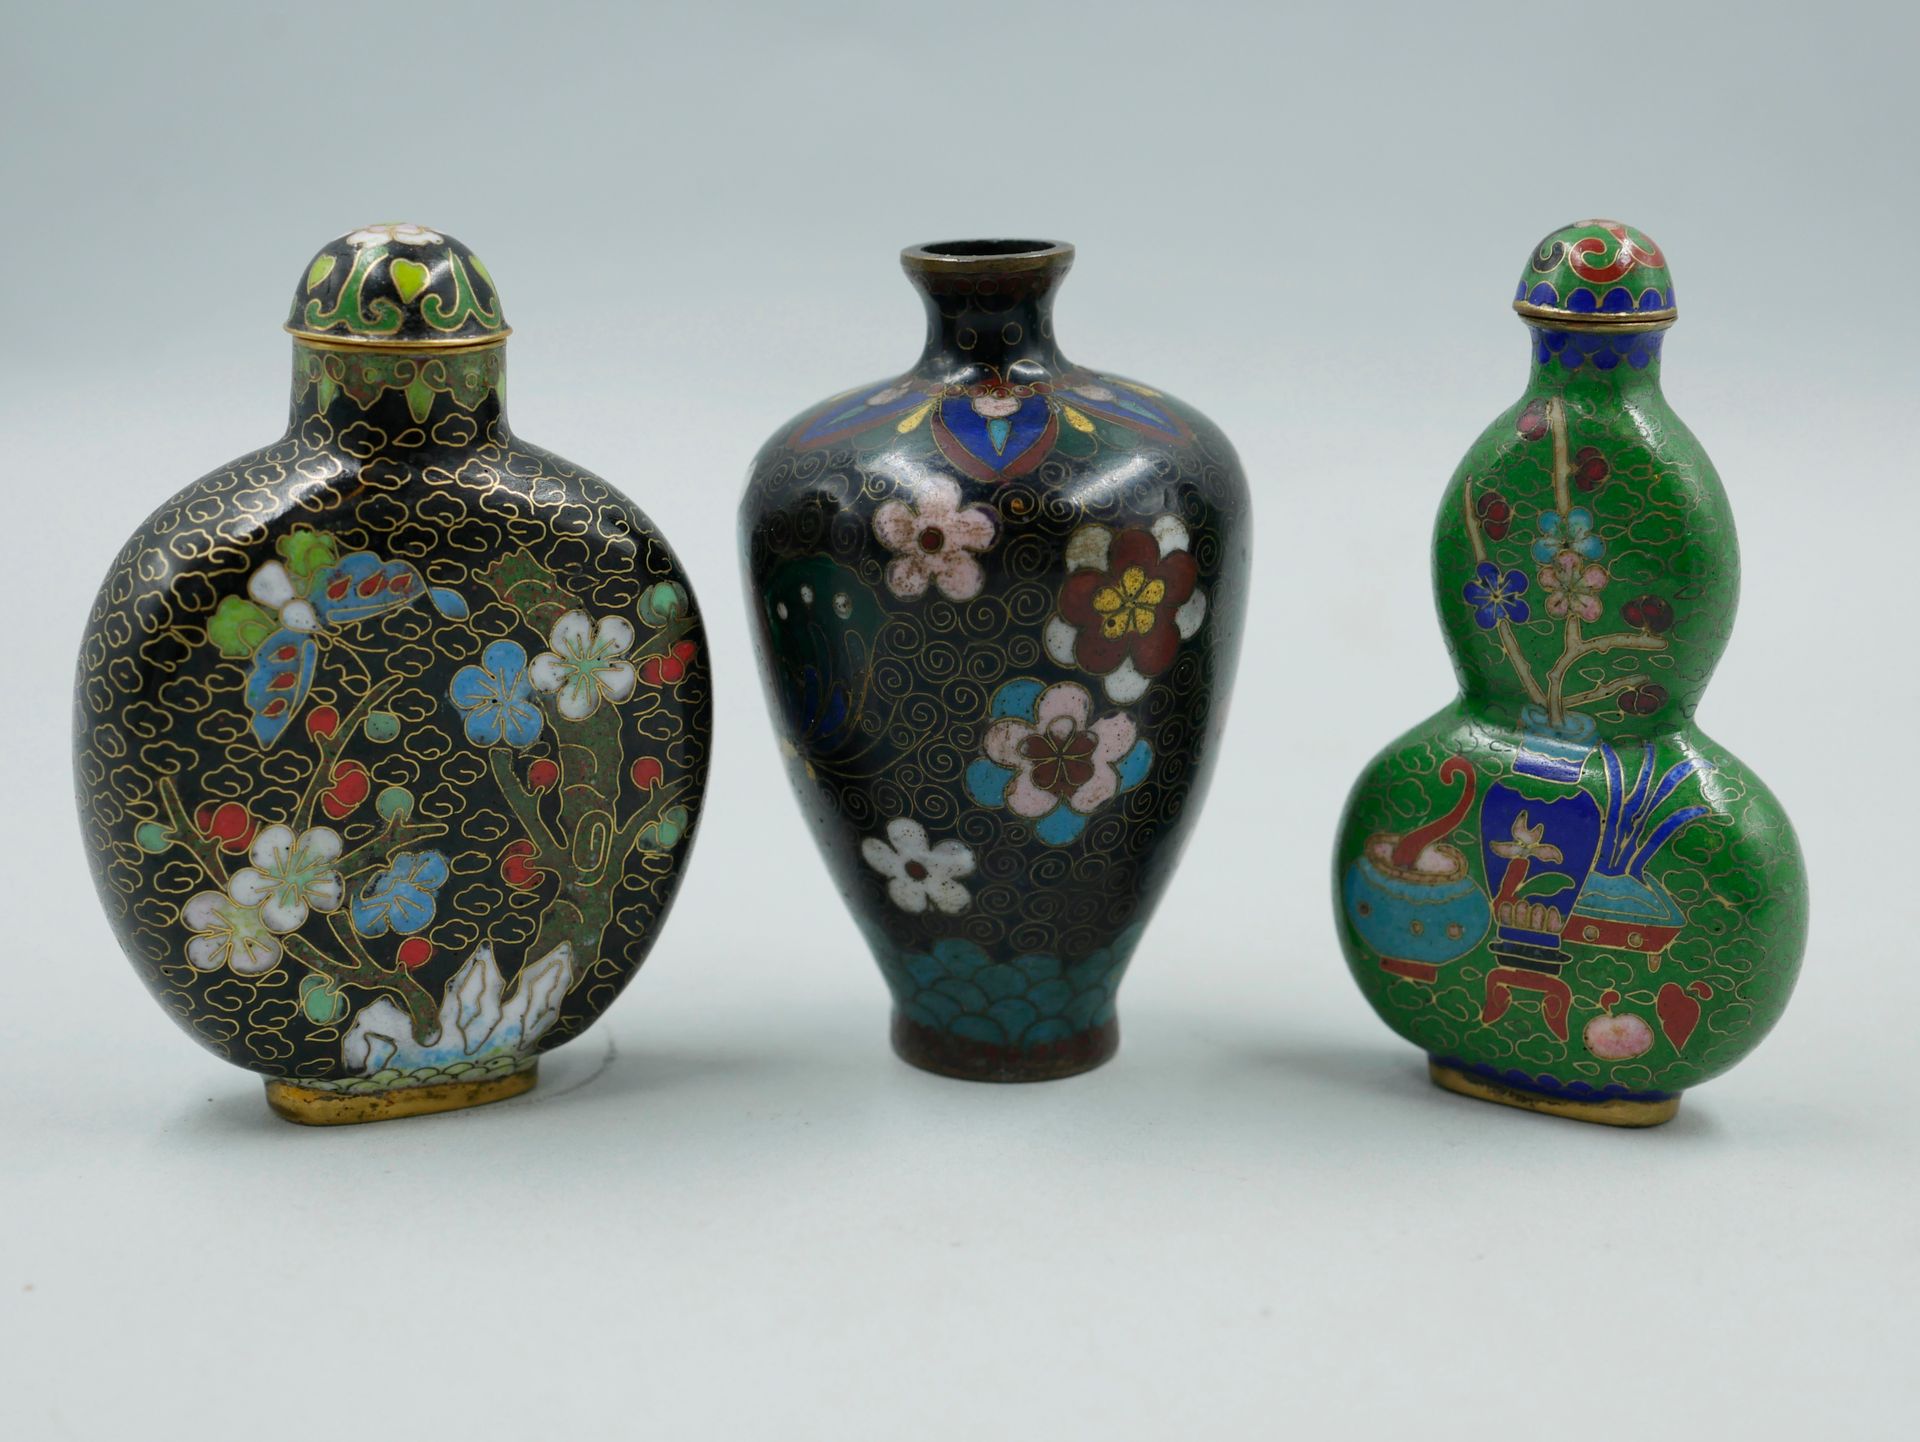 Null 中国。两个掐丝铜和多色珐琅的鼻烟壶，装饰着梅花枝和花瓶。高8厘米。一件景泰蓝青铜和多色珐琅的小花瓶，黑底有蝴蝶和花朵。高8厘米